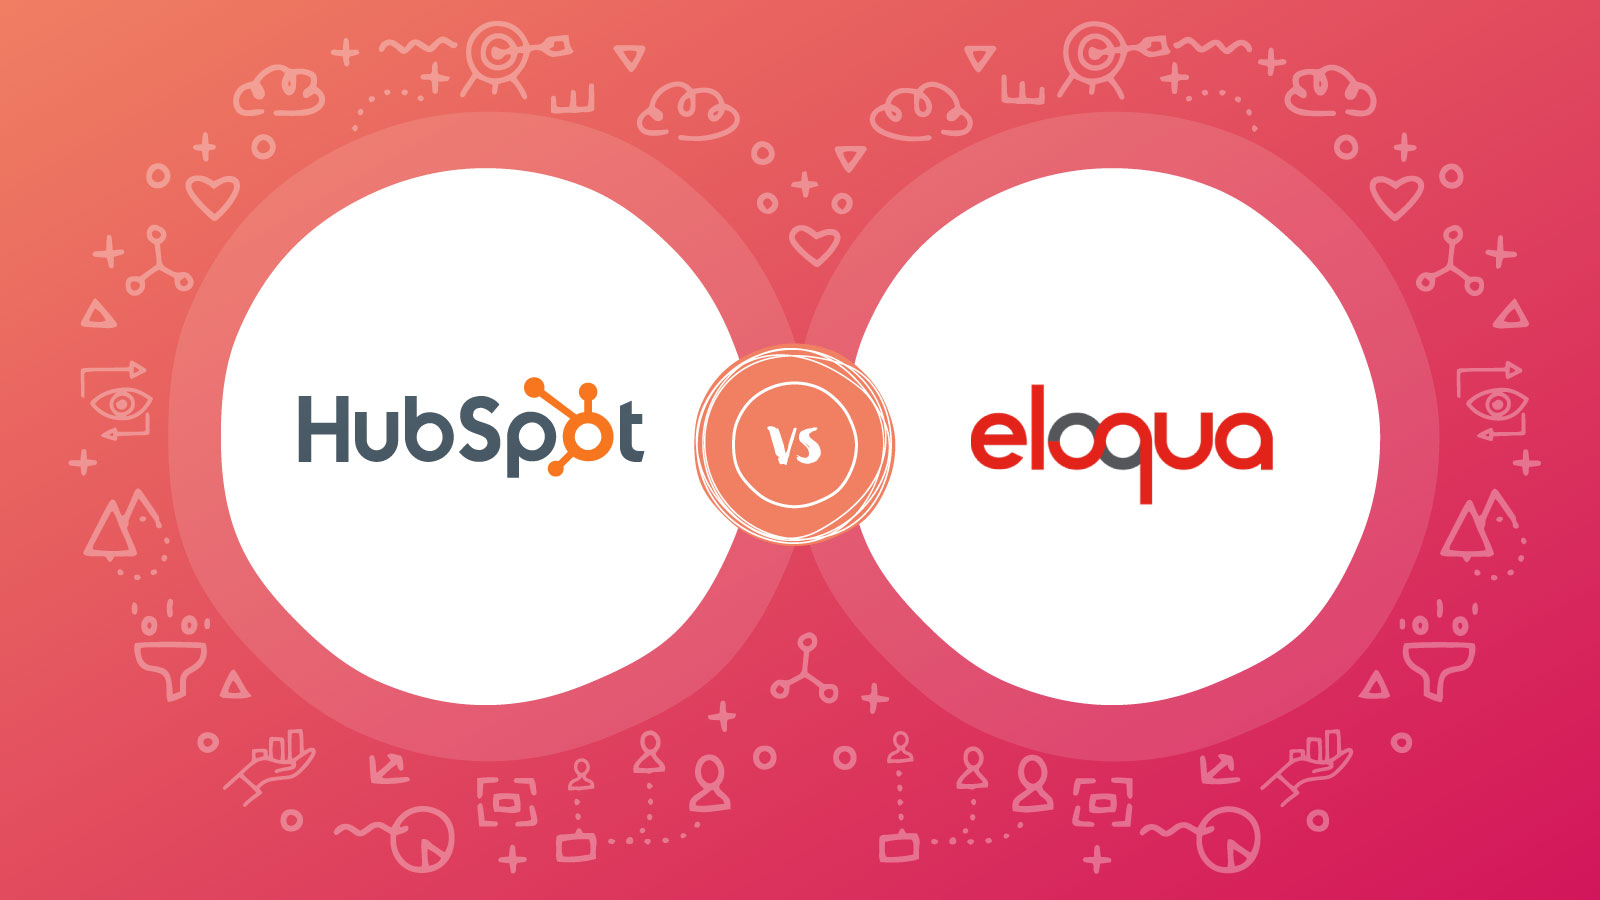 HubSpot vs Eloqua